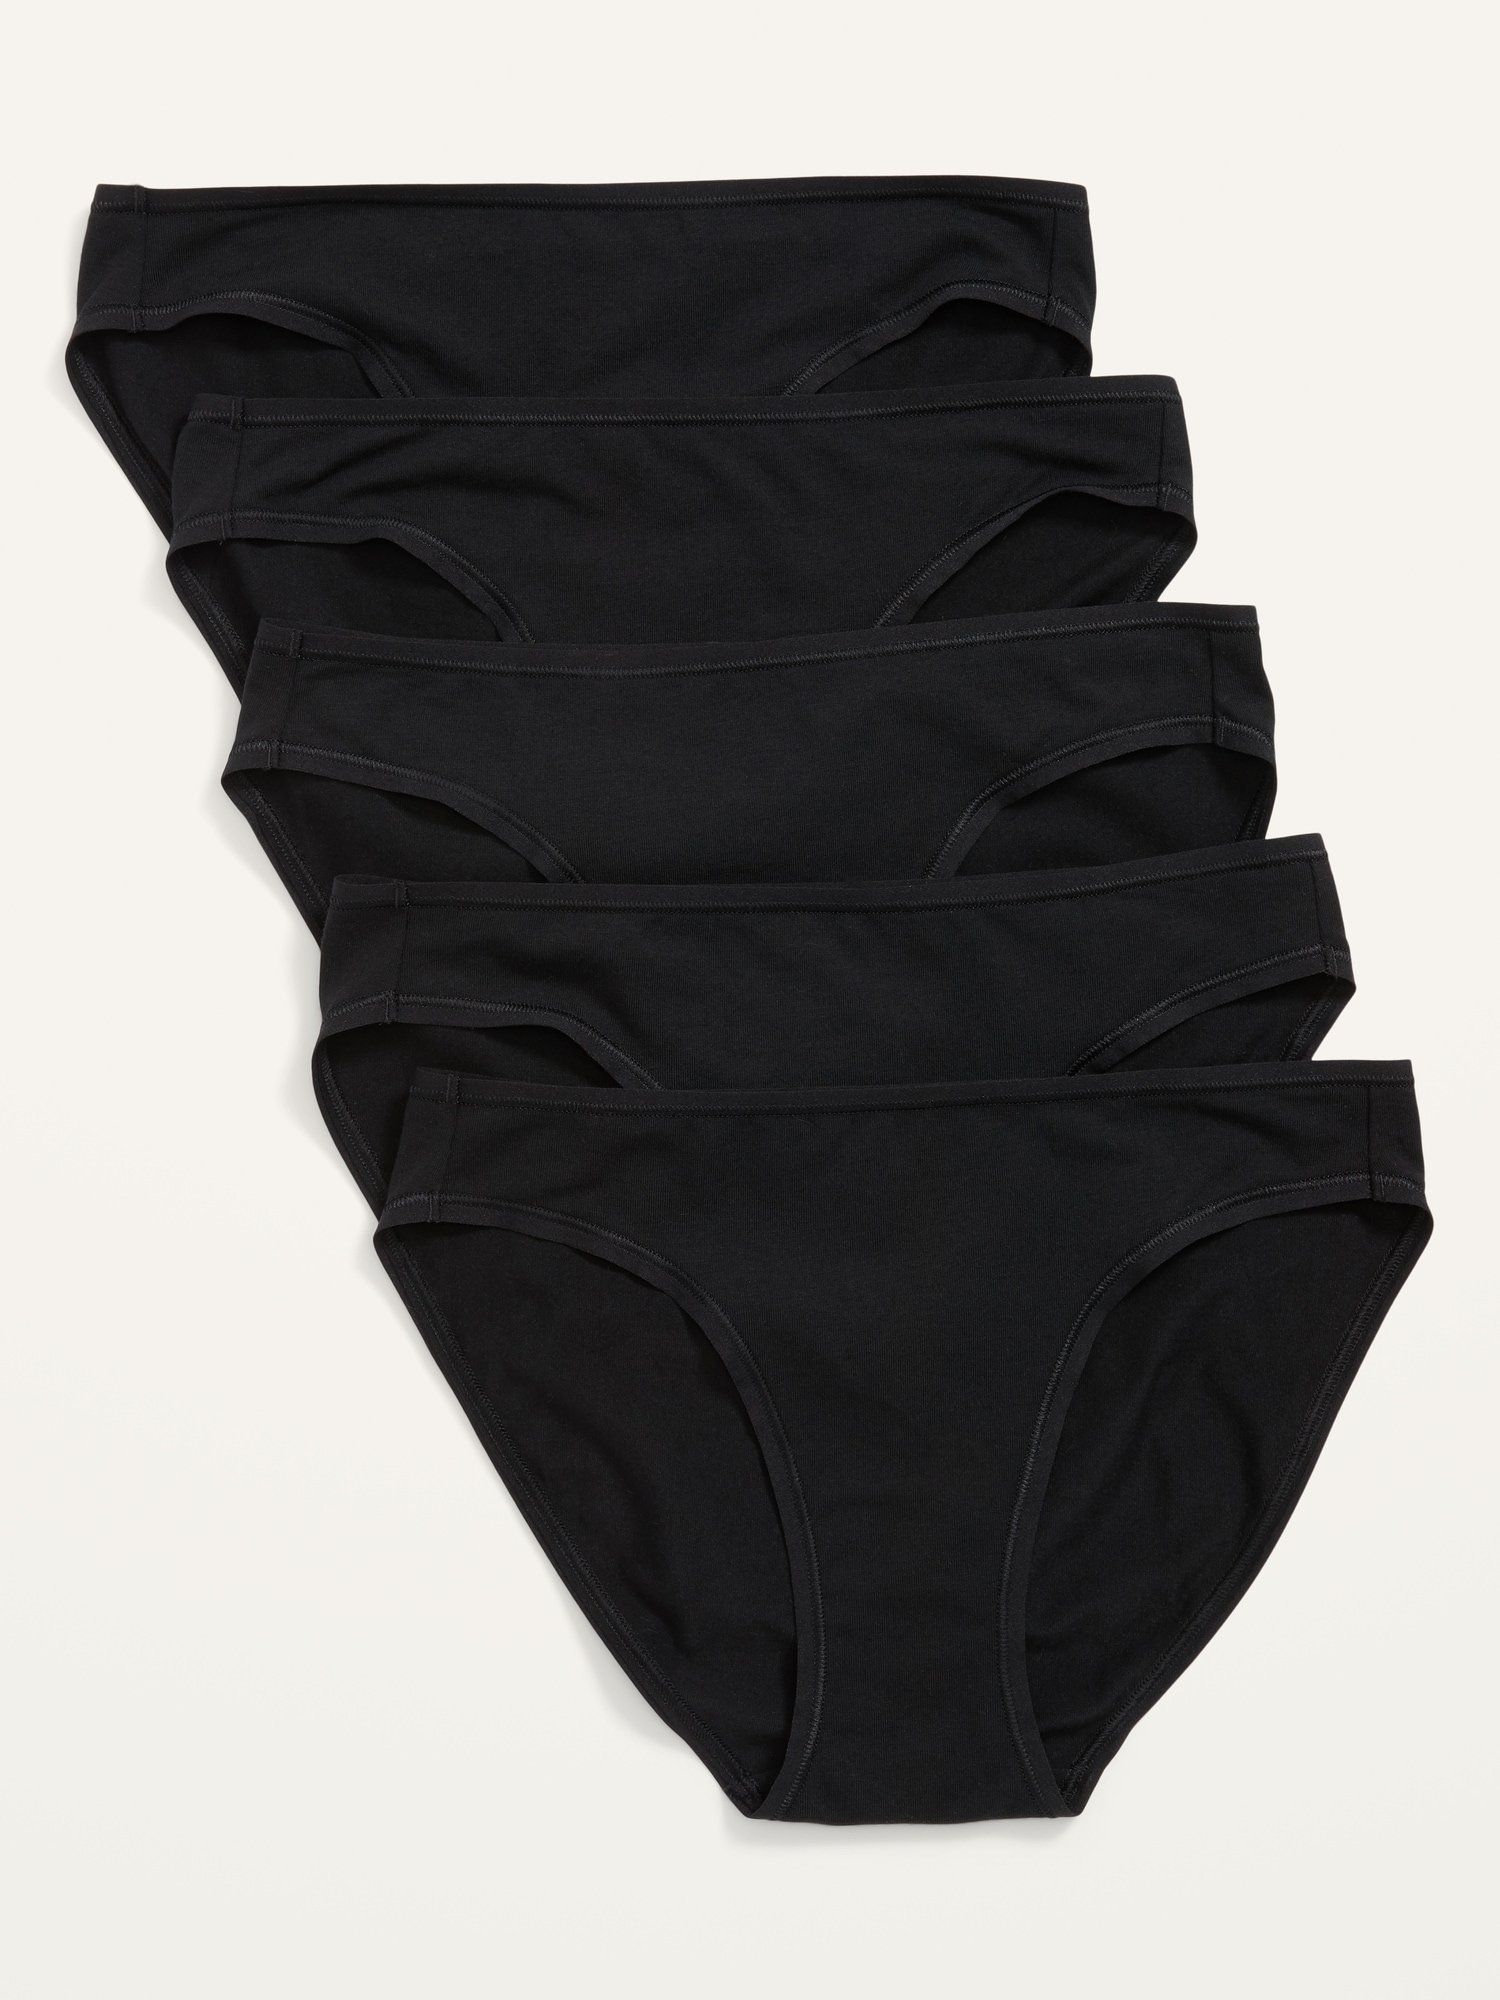 Jersey Bikini Underwear 5-Pack for Women